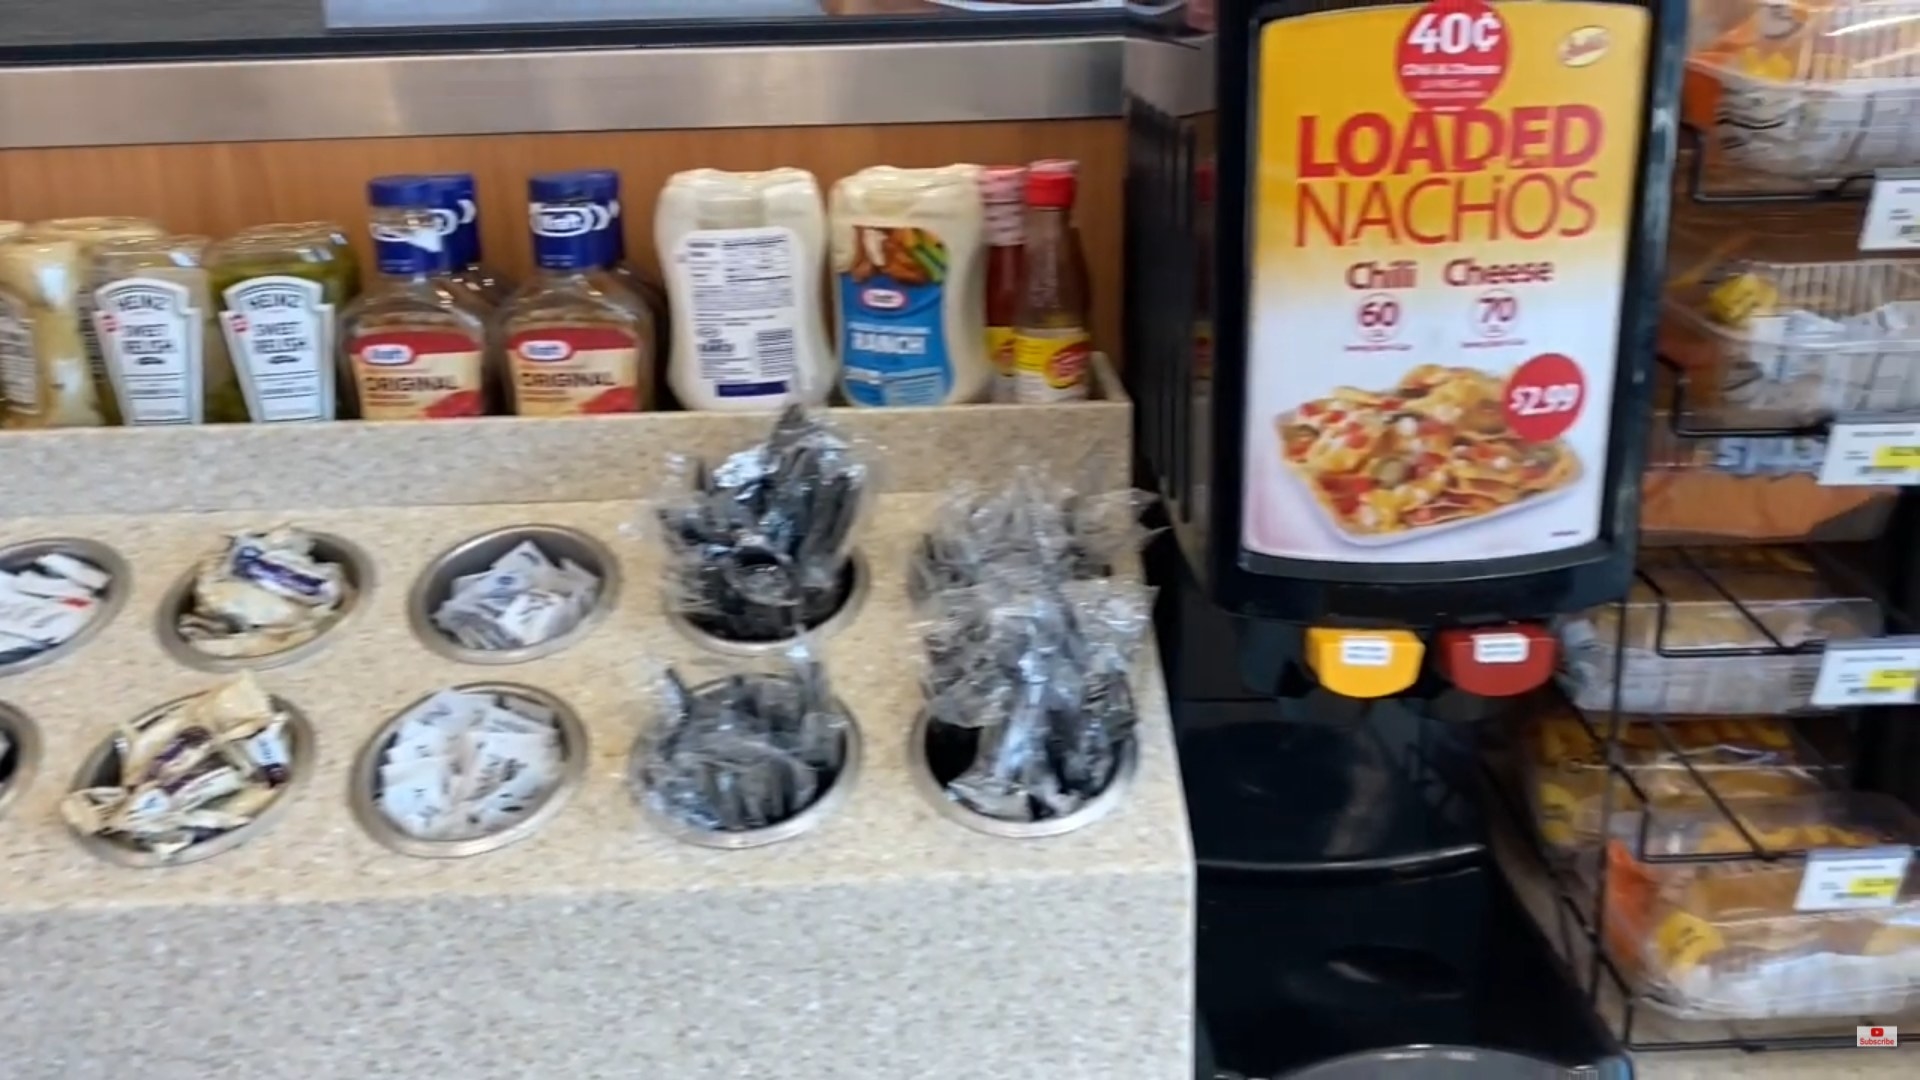 Gas station setup for nachos